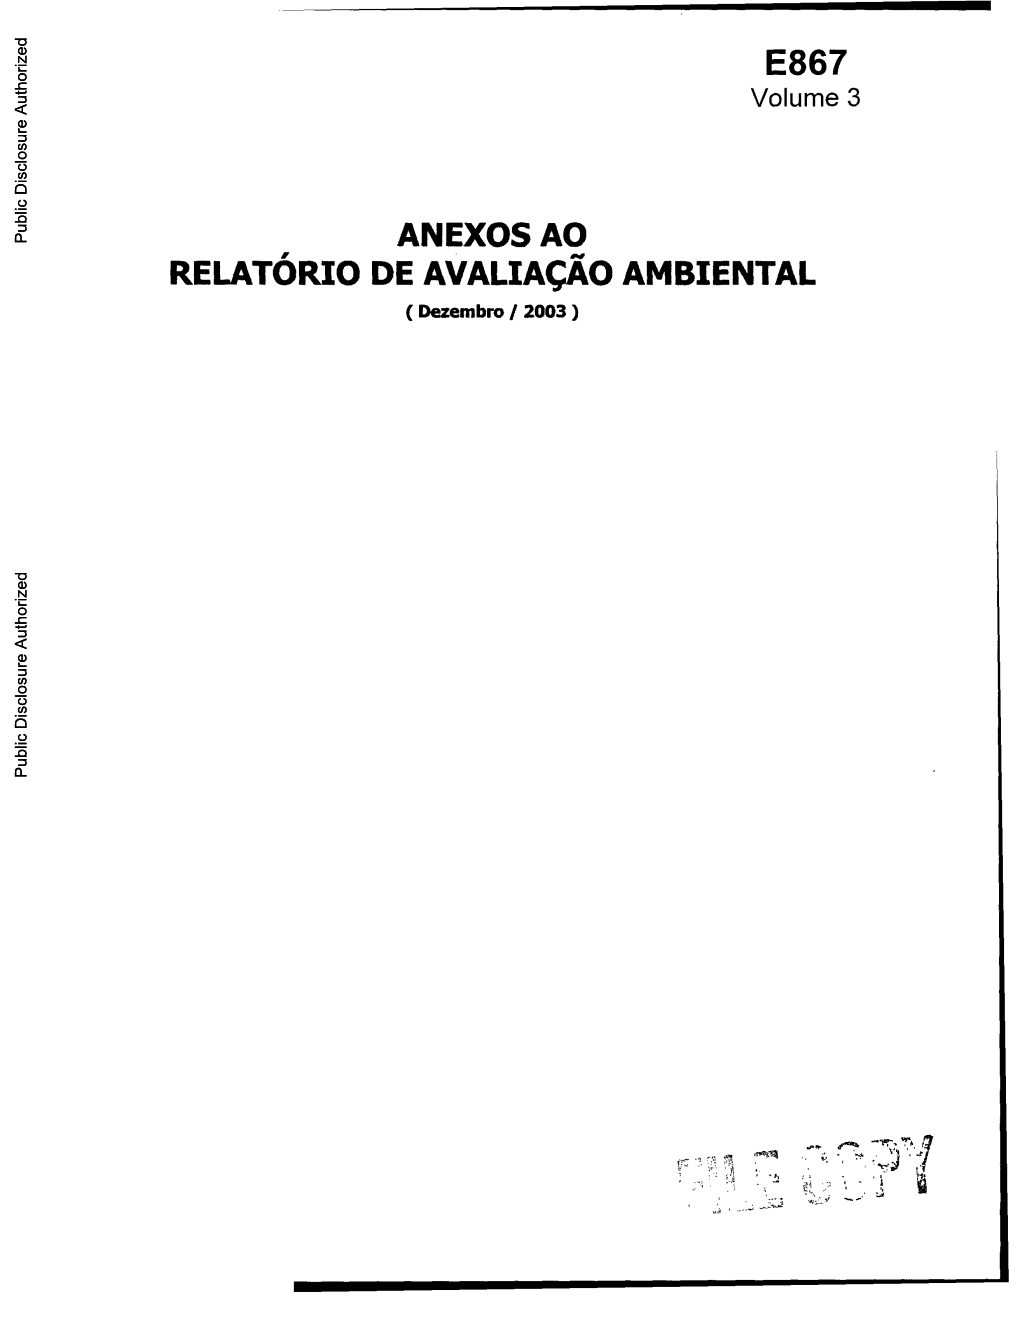 ANEXOS AO RELATÓRIO DE AVALIAÇAO AMBIENTAL (Dezembro / 2003) Public Disclosure Authorized Public Disclosure Authorized Public Disclosure Authorized